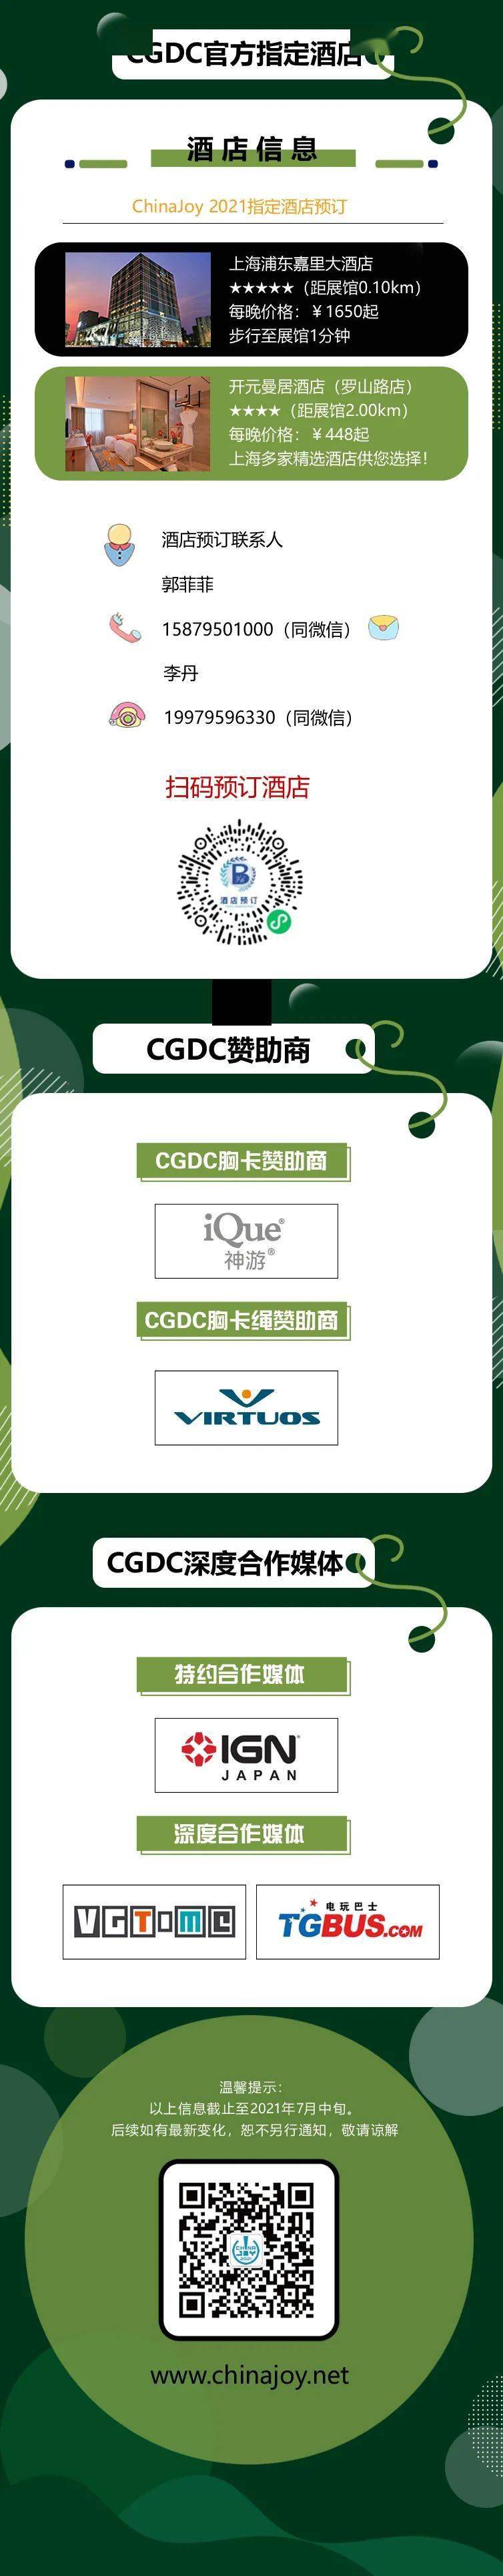 2021年第十九届ChinaJoy展前预览（大型会议篇—CGDC）正式发布 